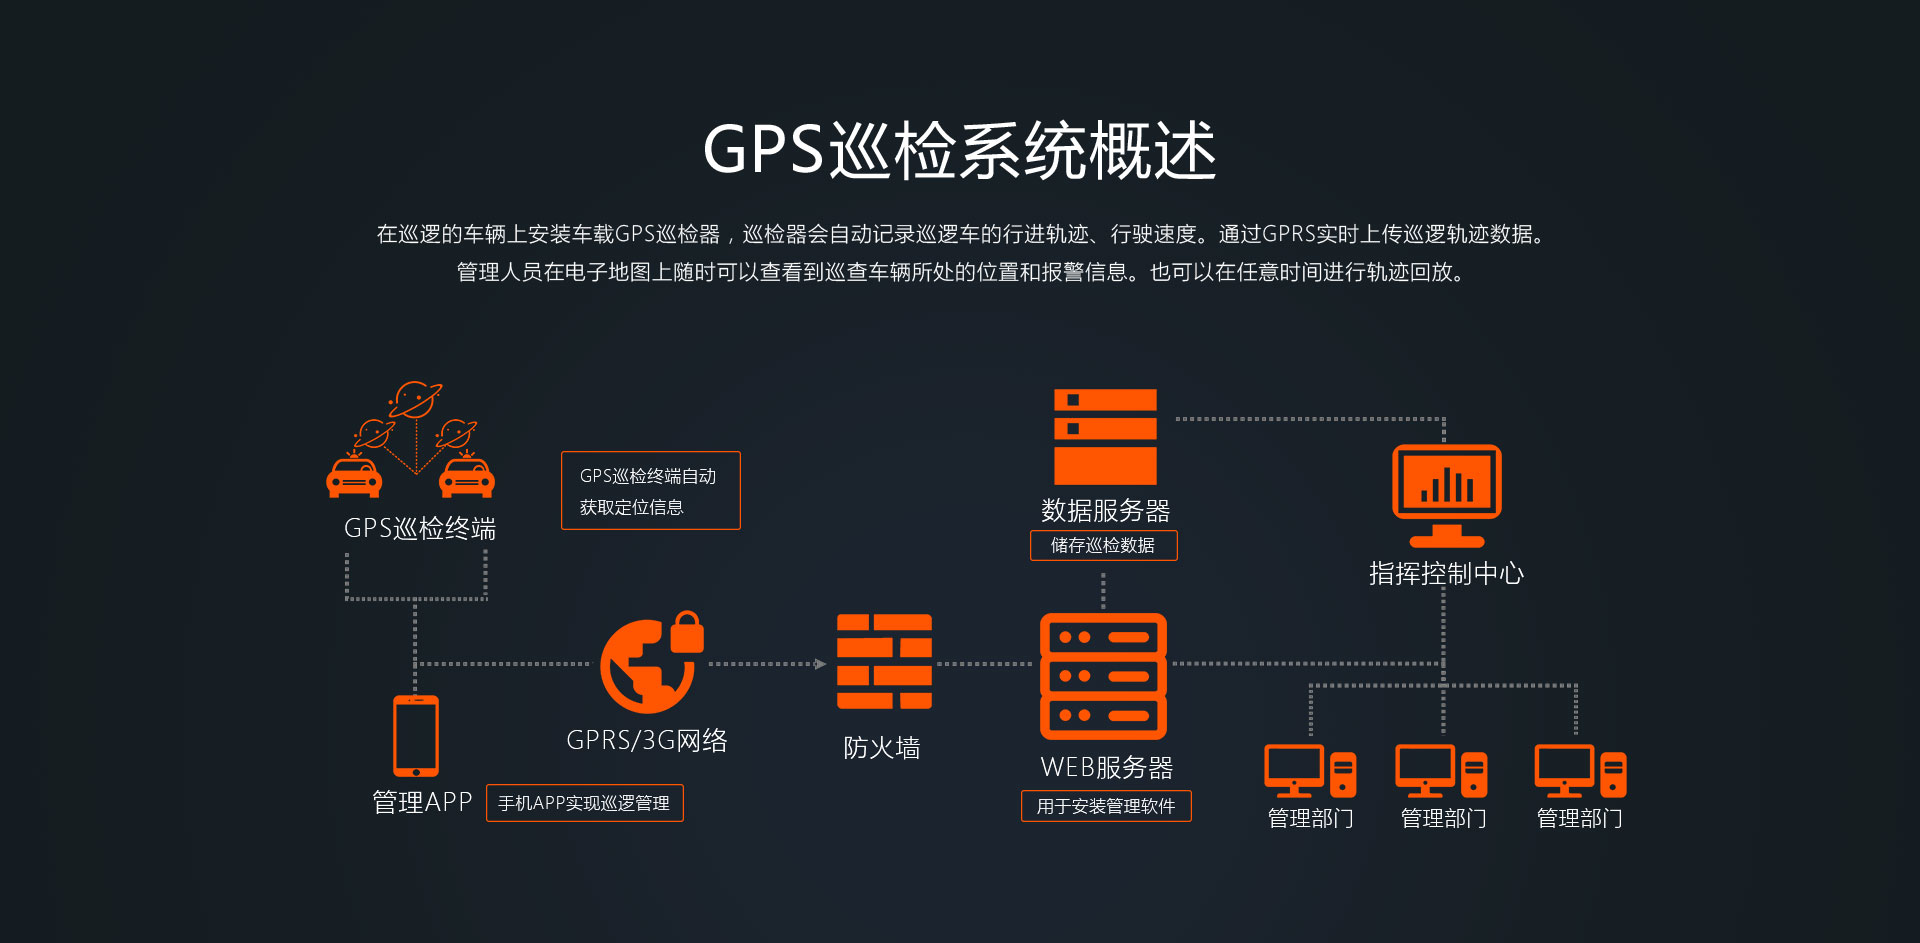 GPS巡检系统概述